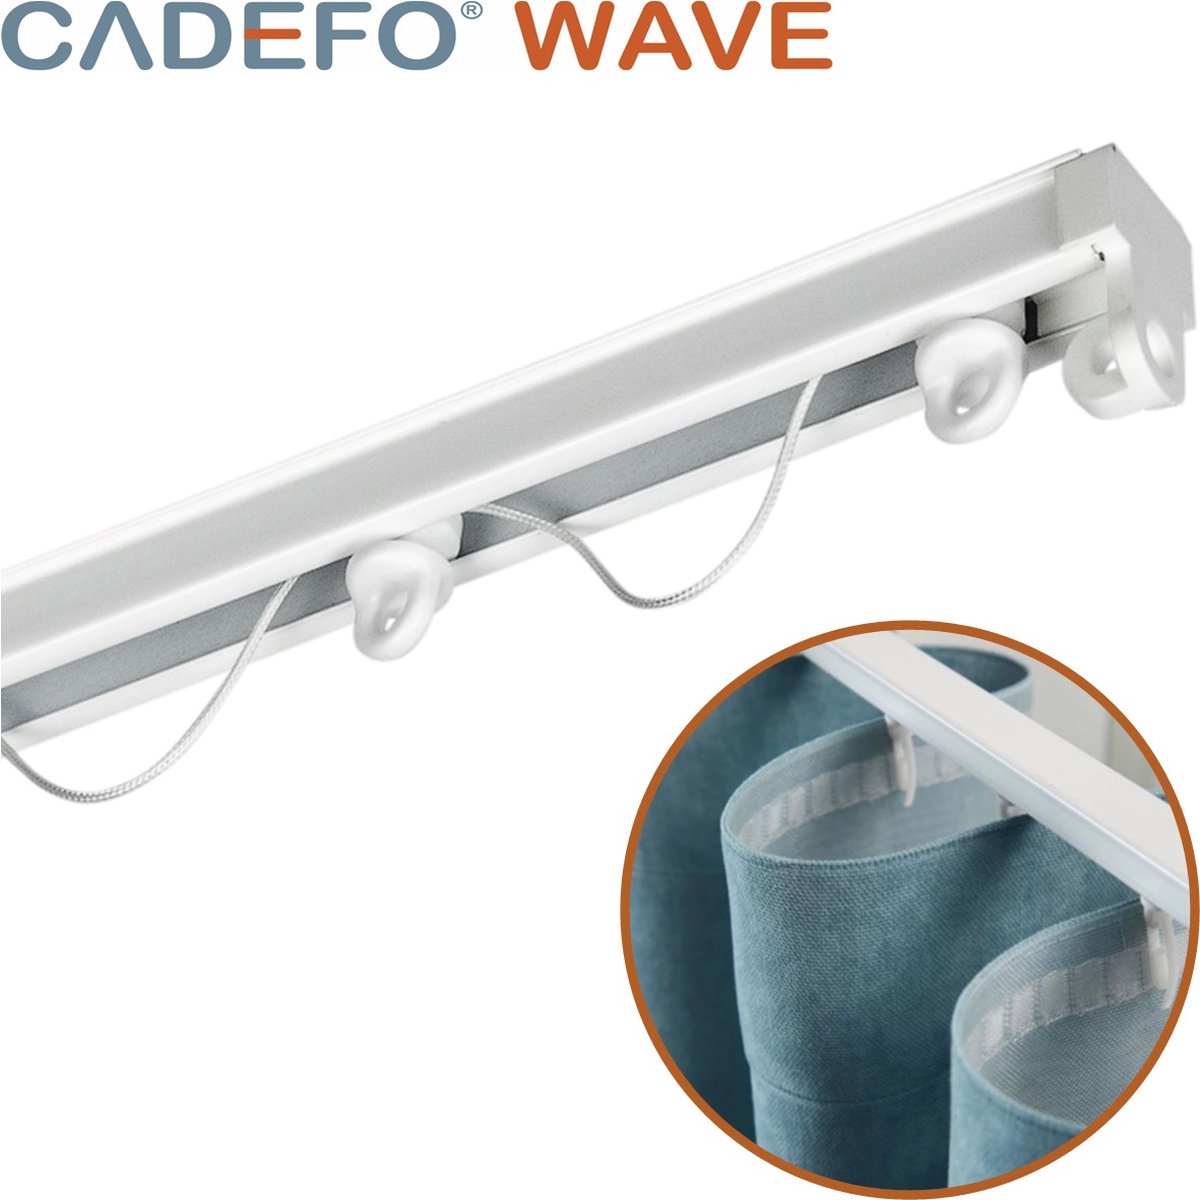 CADEFO WAVE (551 - 600 cm) Gordijnrails - Compleet op maat! - UIT 1 STUK - Leverbaar tot 6 meter - Plafondbevestiging - Lengte 567 cm